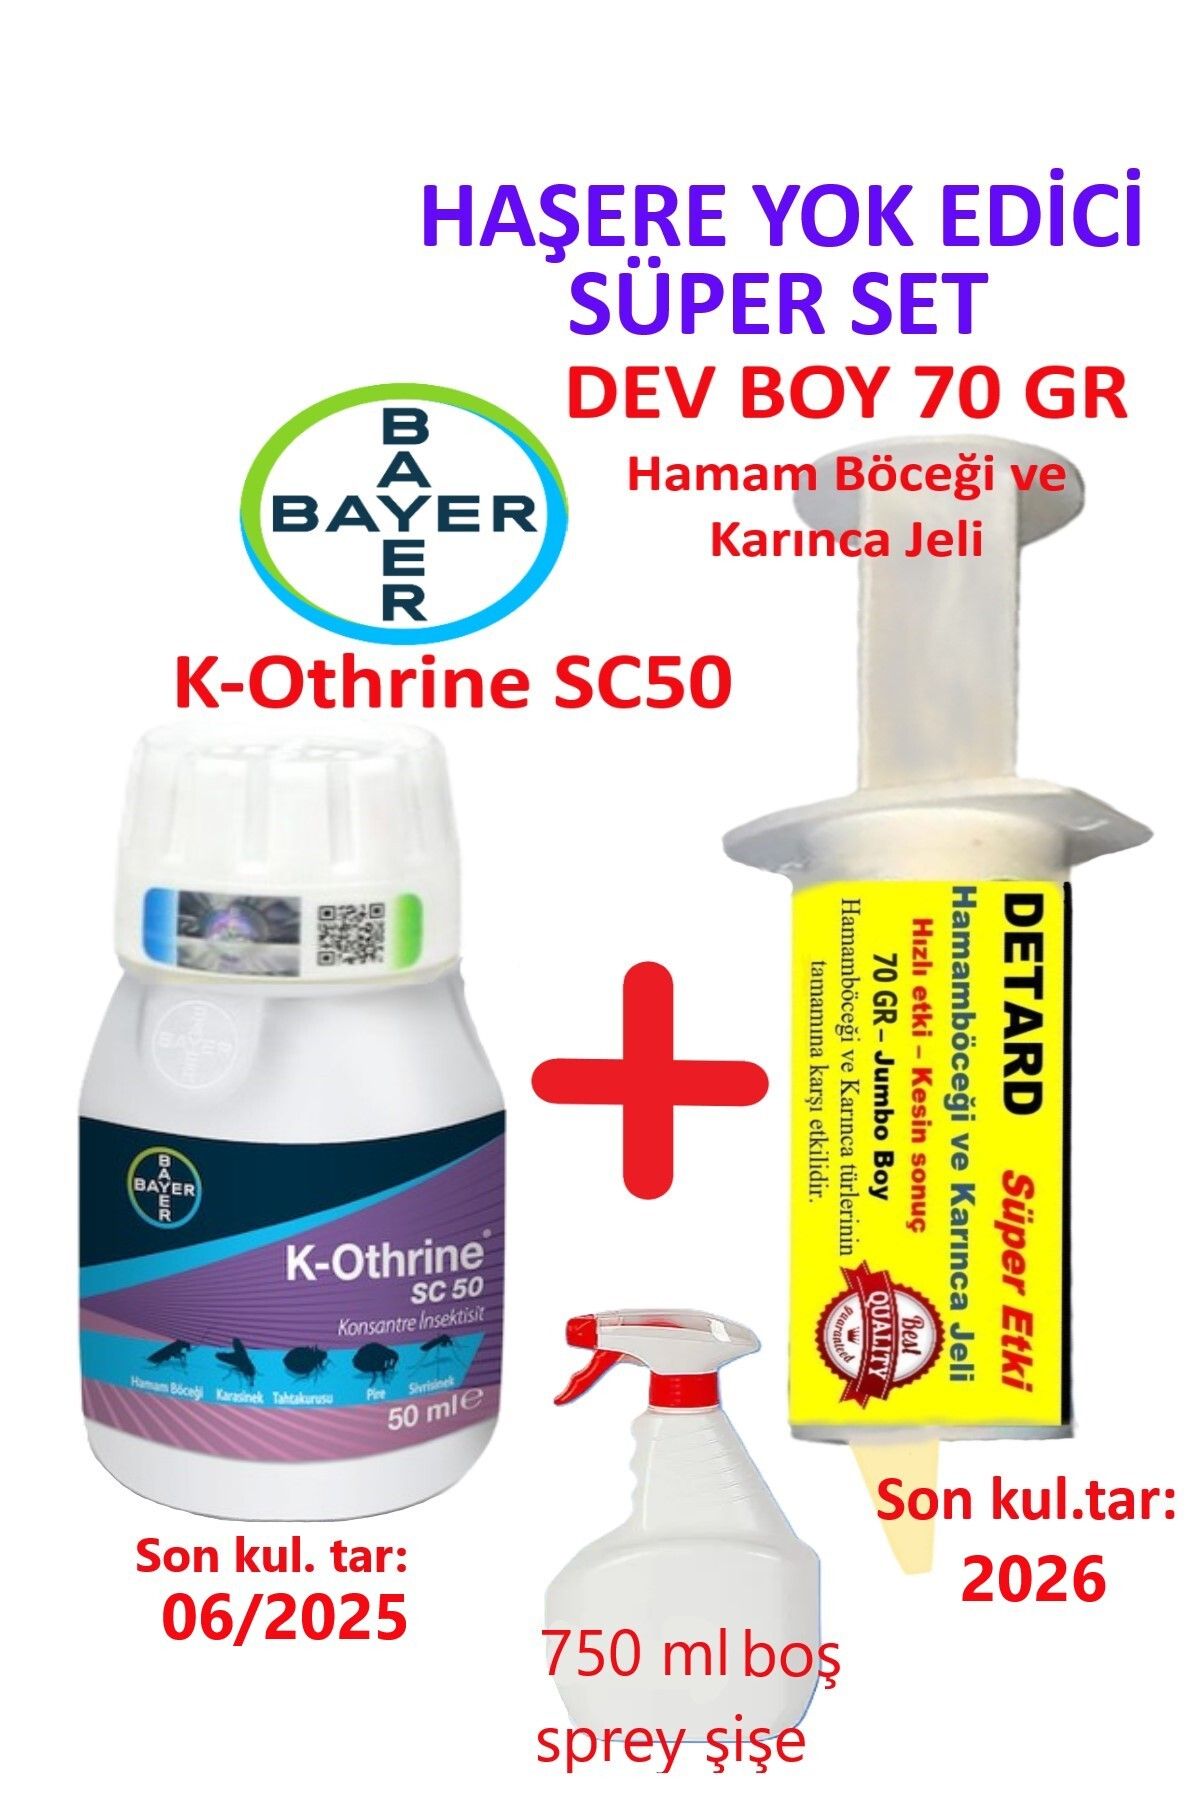 Bayer K-othrine SC50 + Detard 70 gr. Hamam Böceği Jeli + 750 ml Sprey Şişe Haşere Yok Edici Süper Set